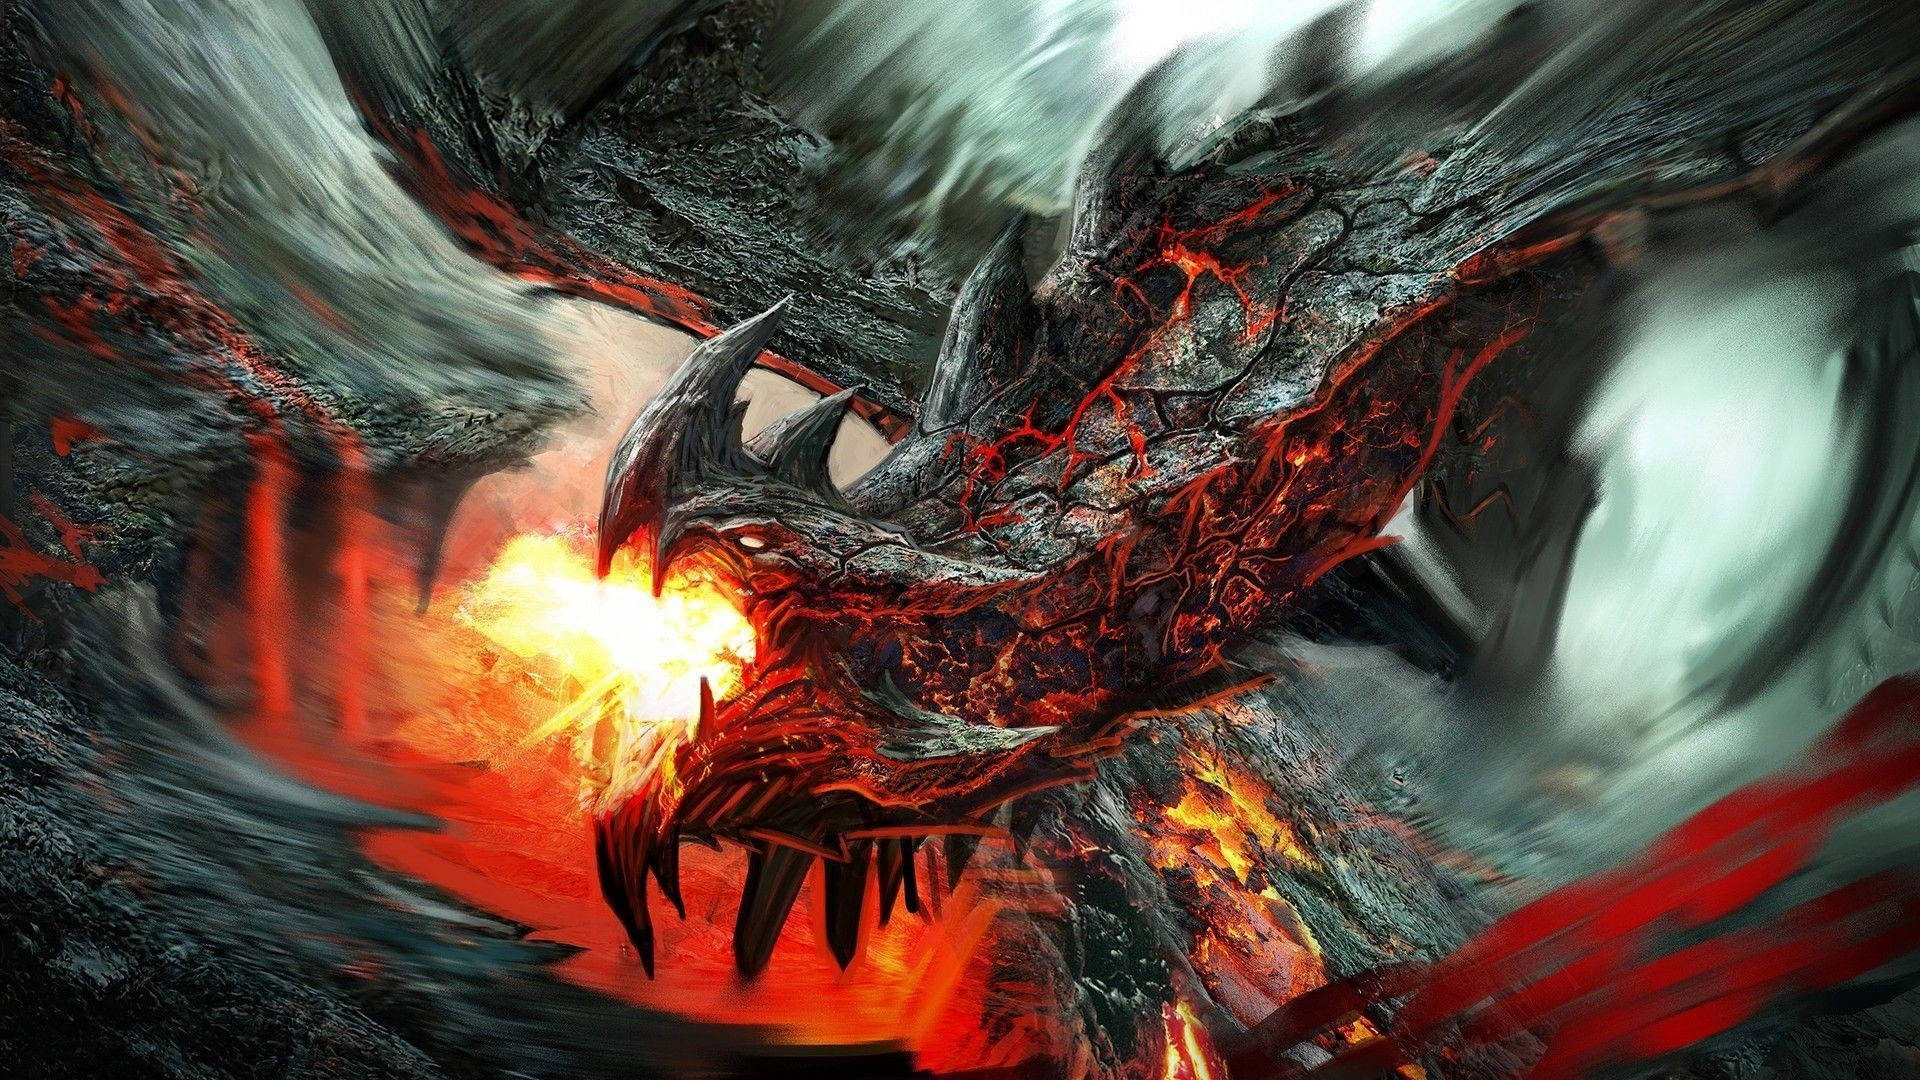 Hd Dragon Fire Breath Background